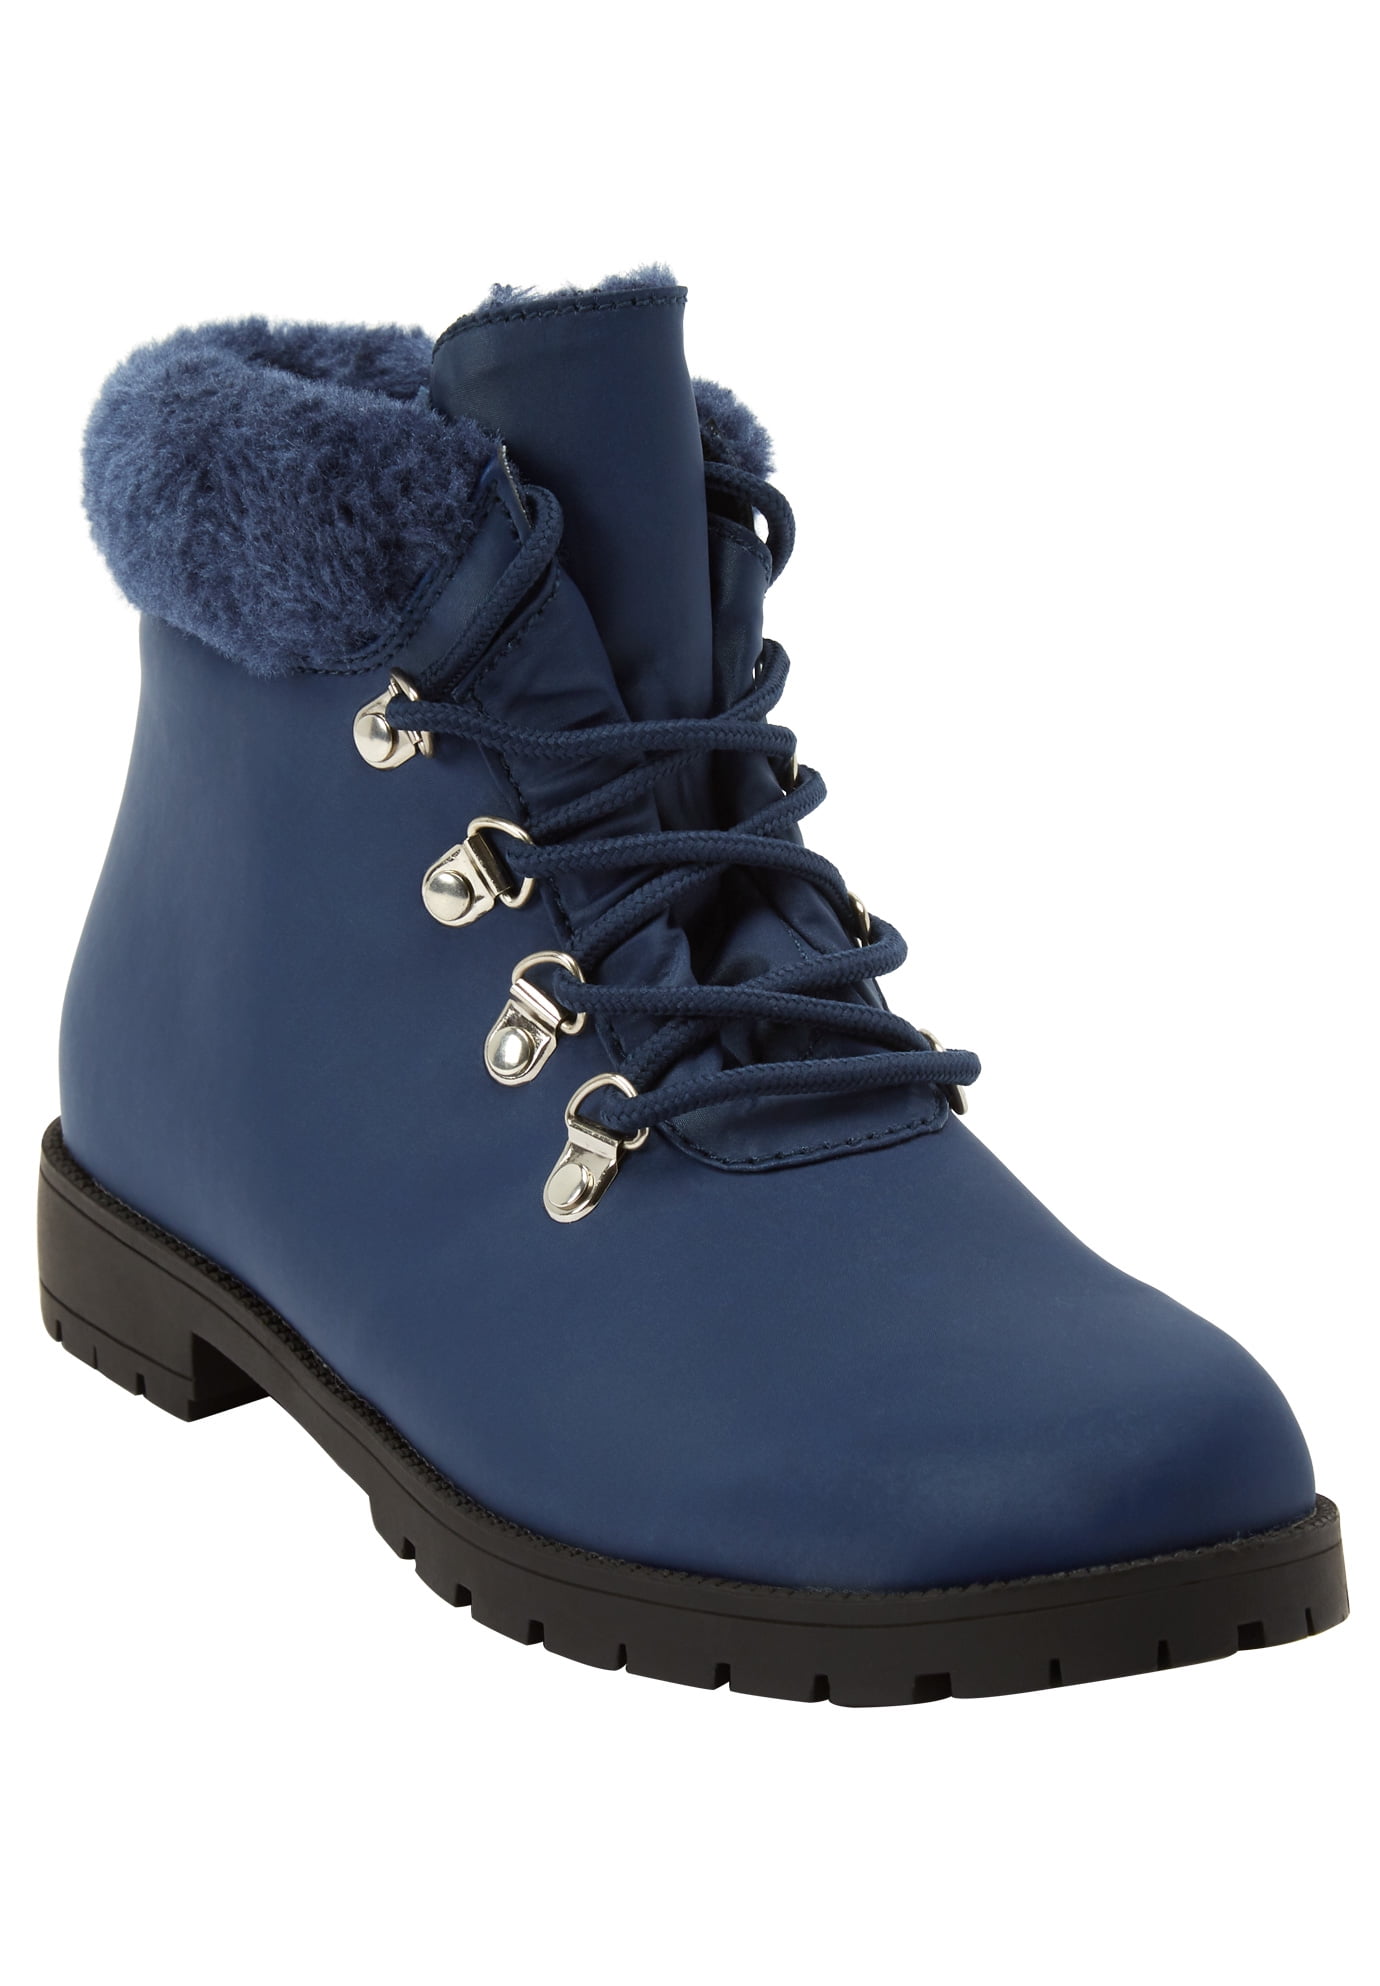 women's winter hiking boots wide width